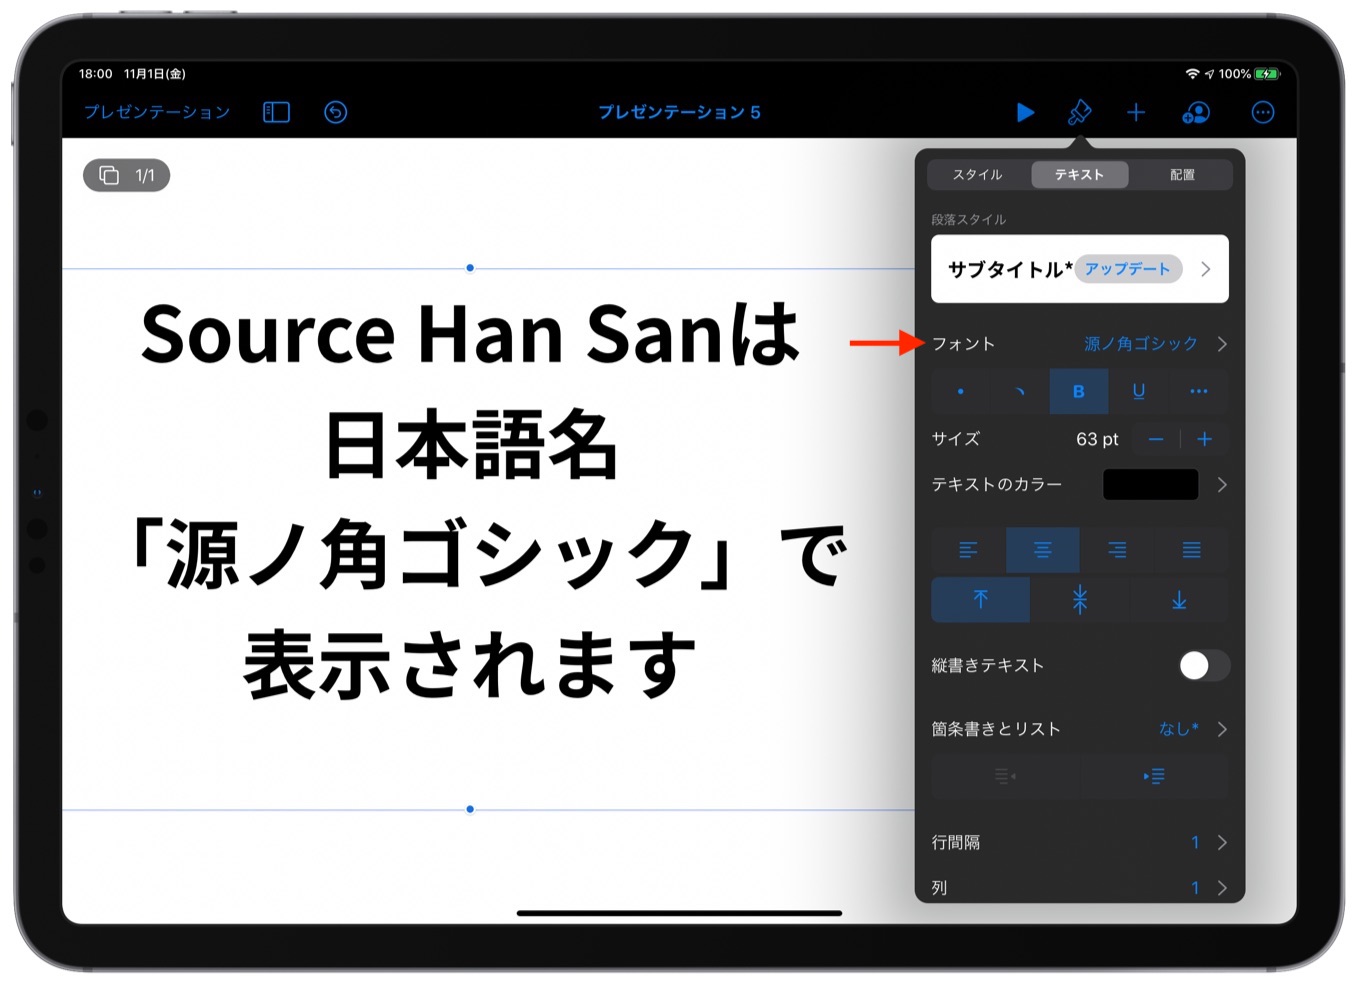 Source Han Sans 源ノ角ゴシック